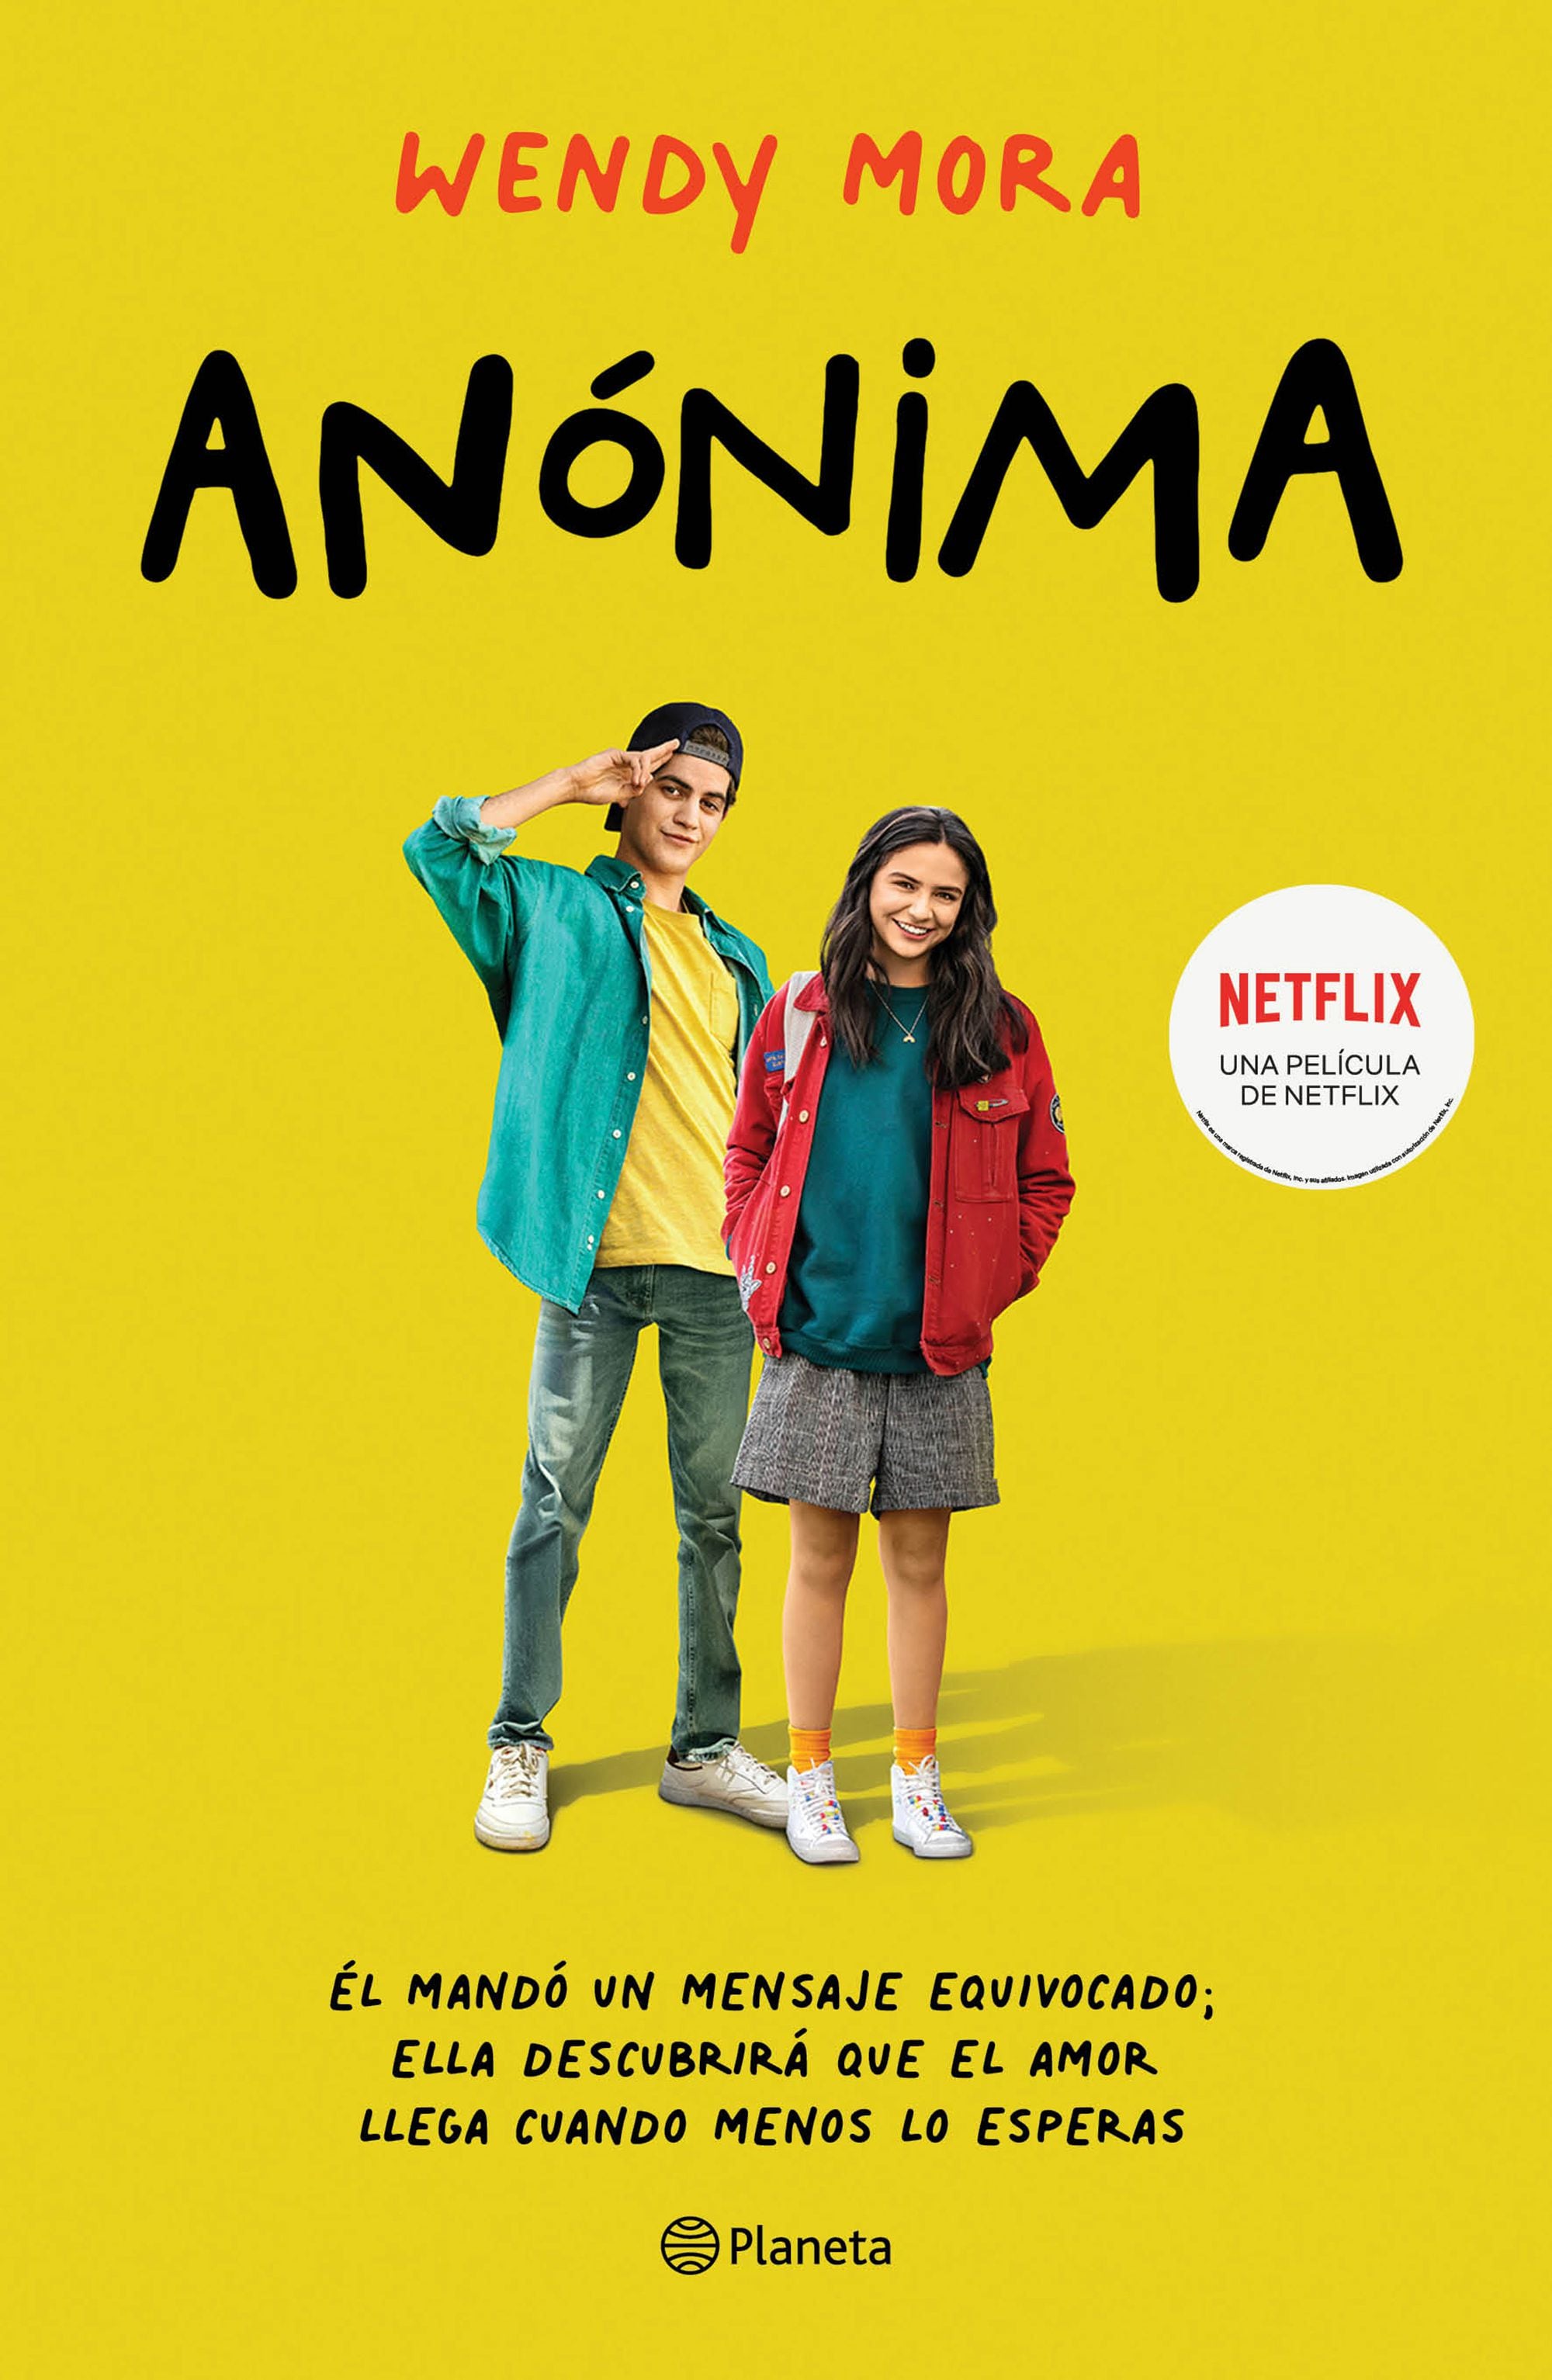 Netflix: Esto es lo que tienen en común Alex y el actor Ralf Morales de  Anónima